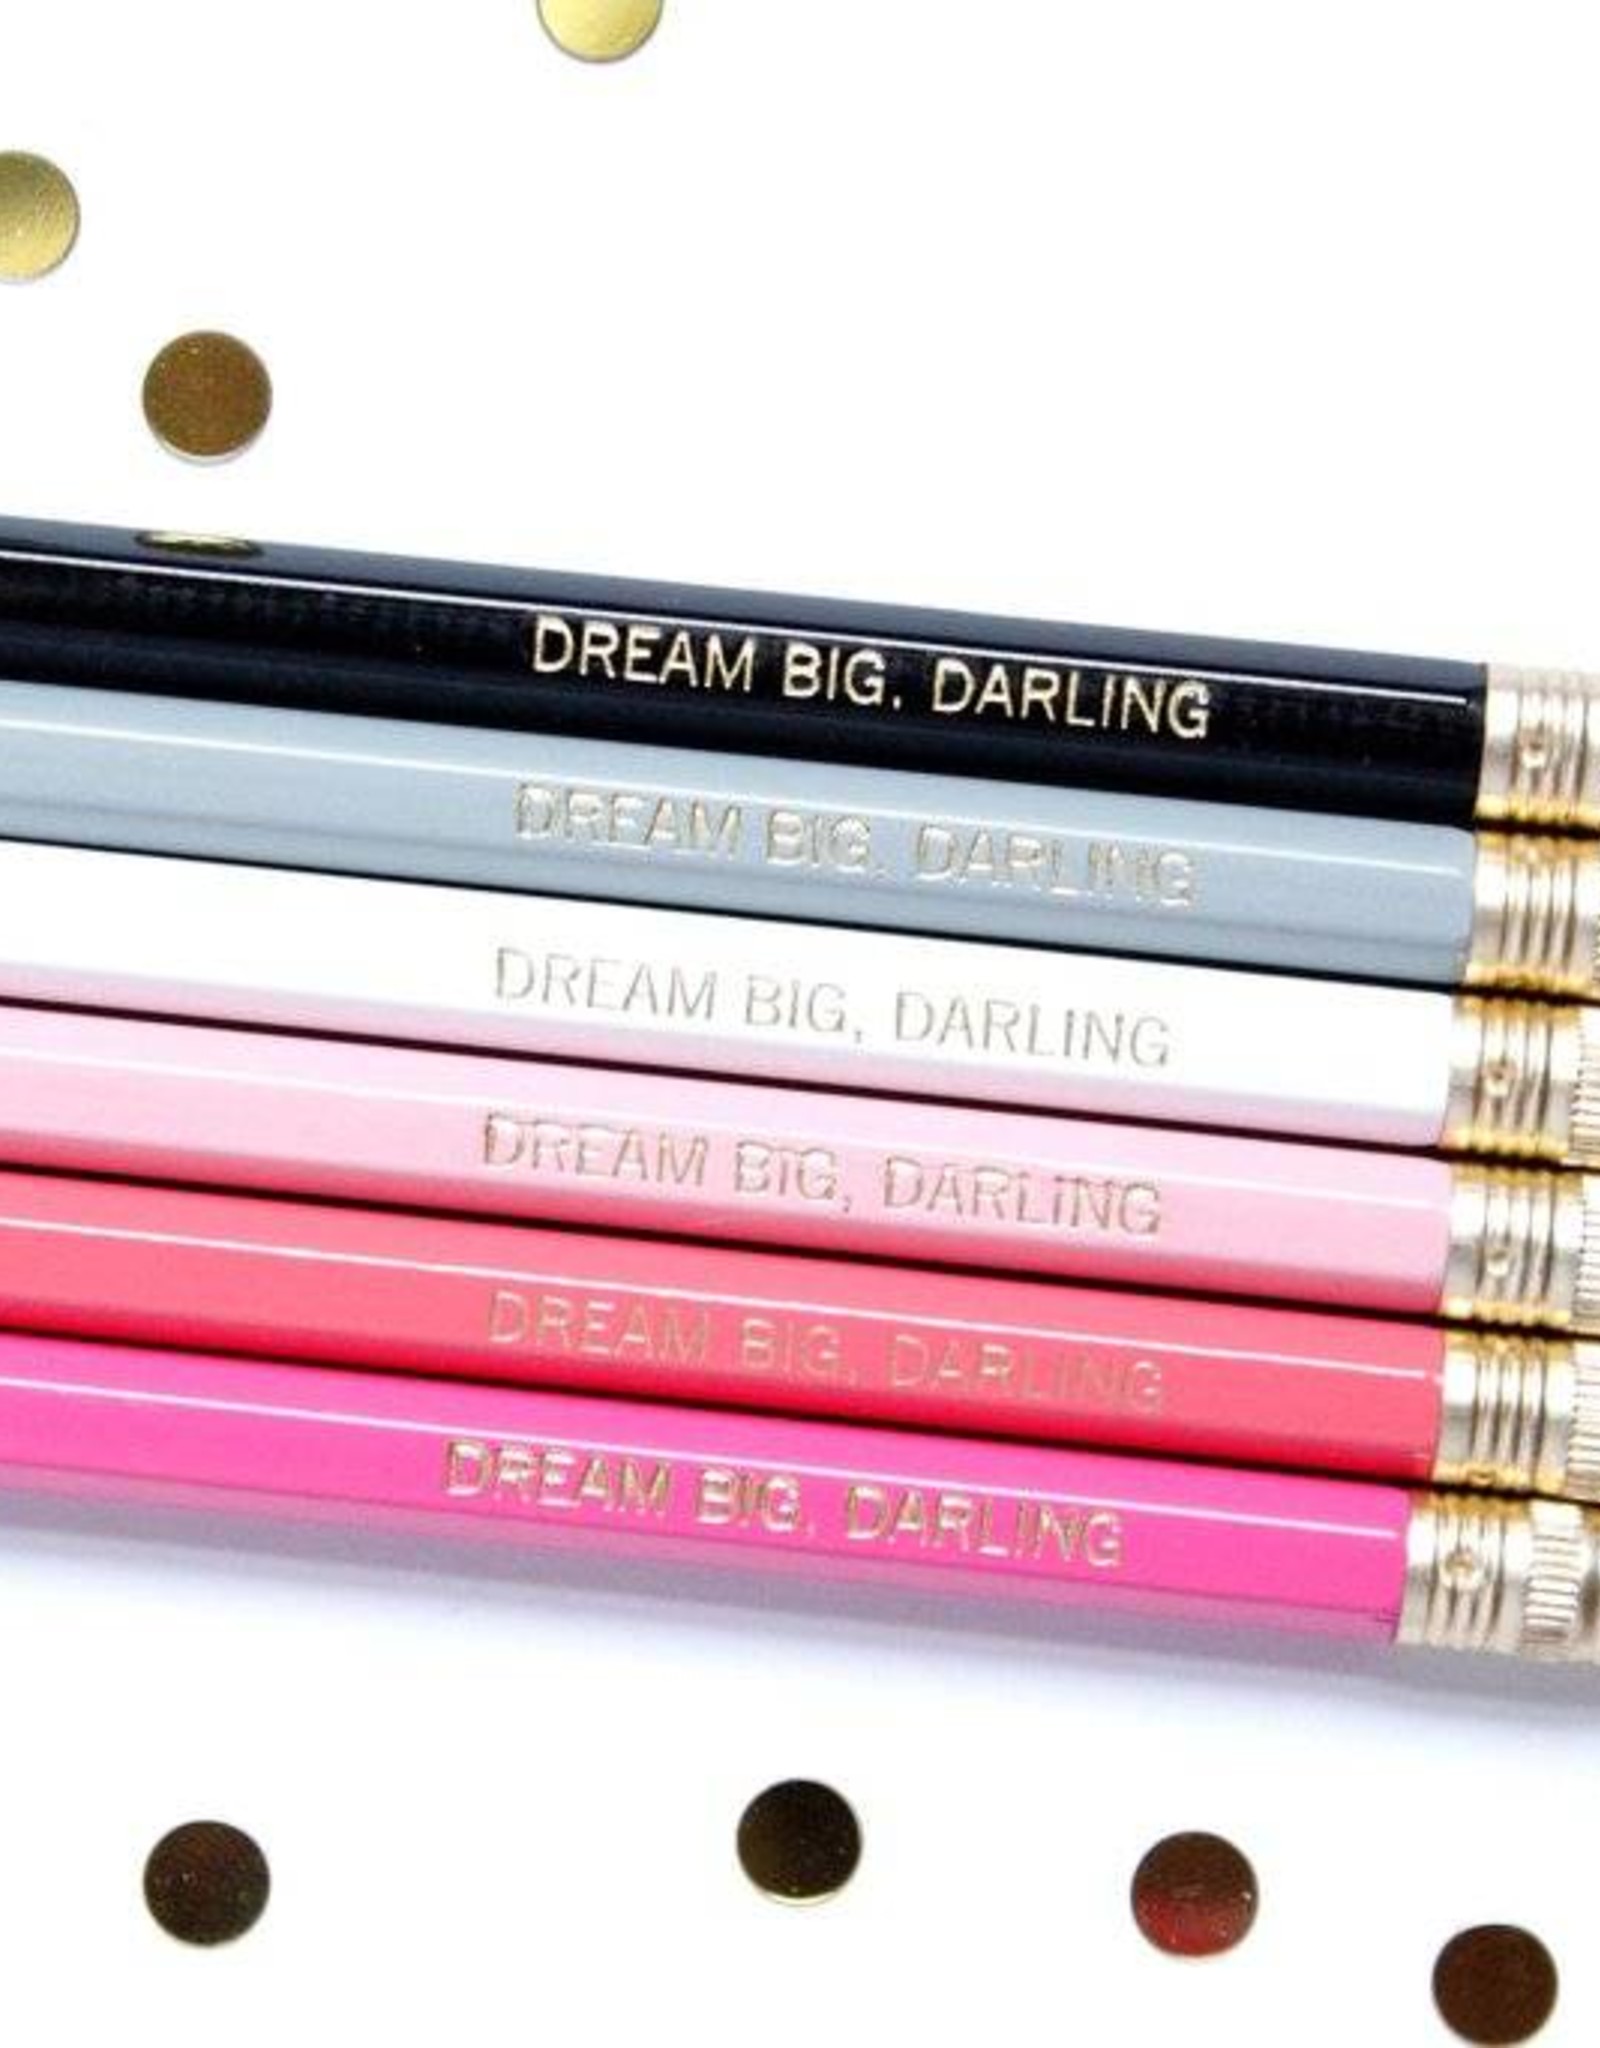 dream big darling pencil set